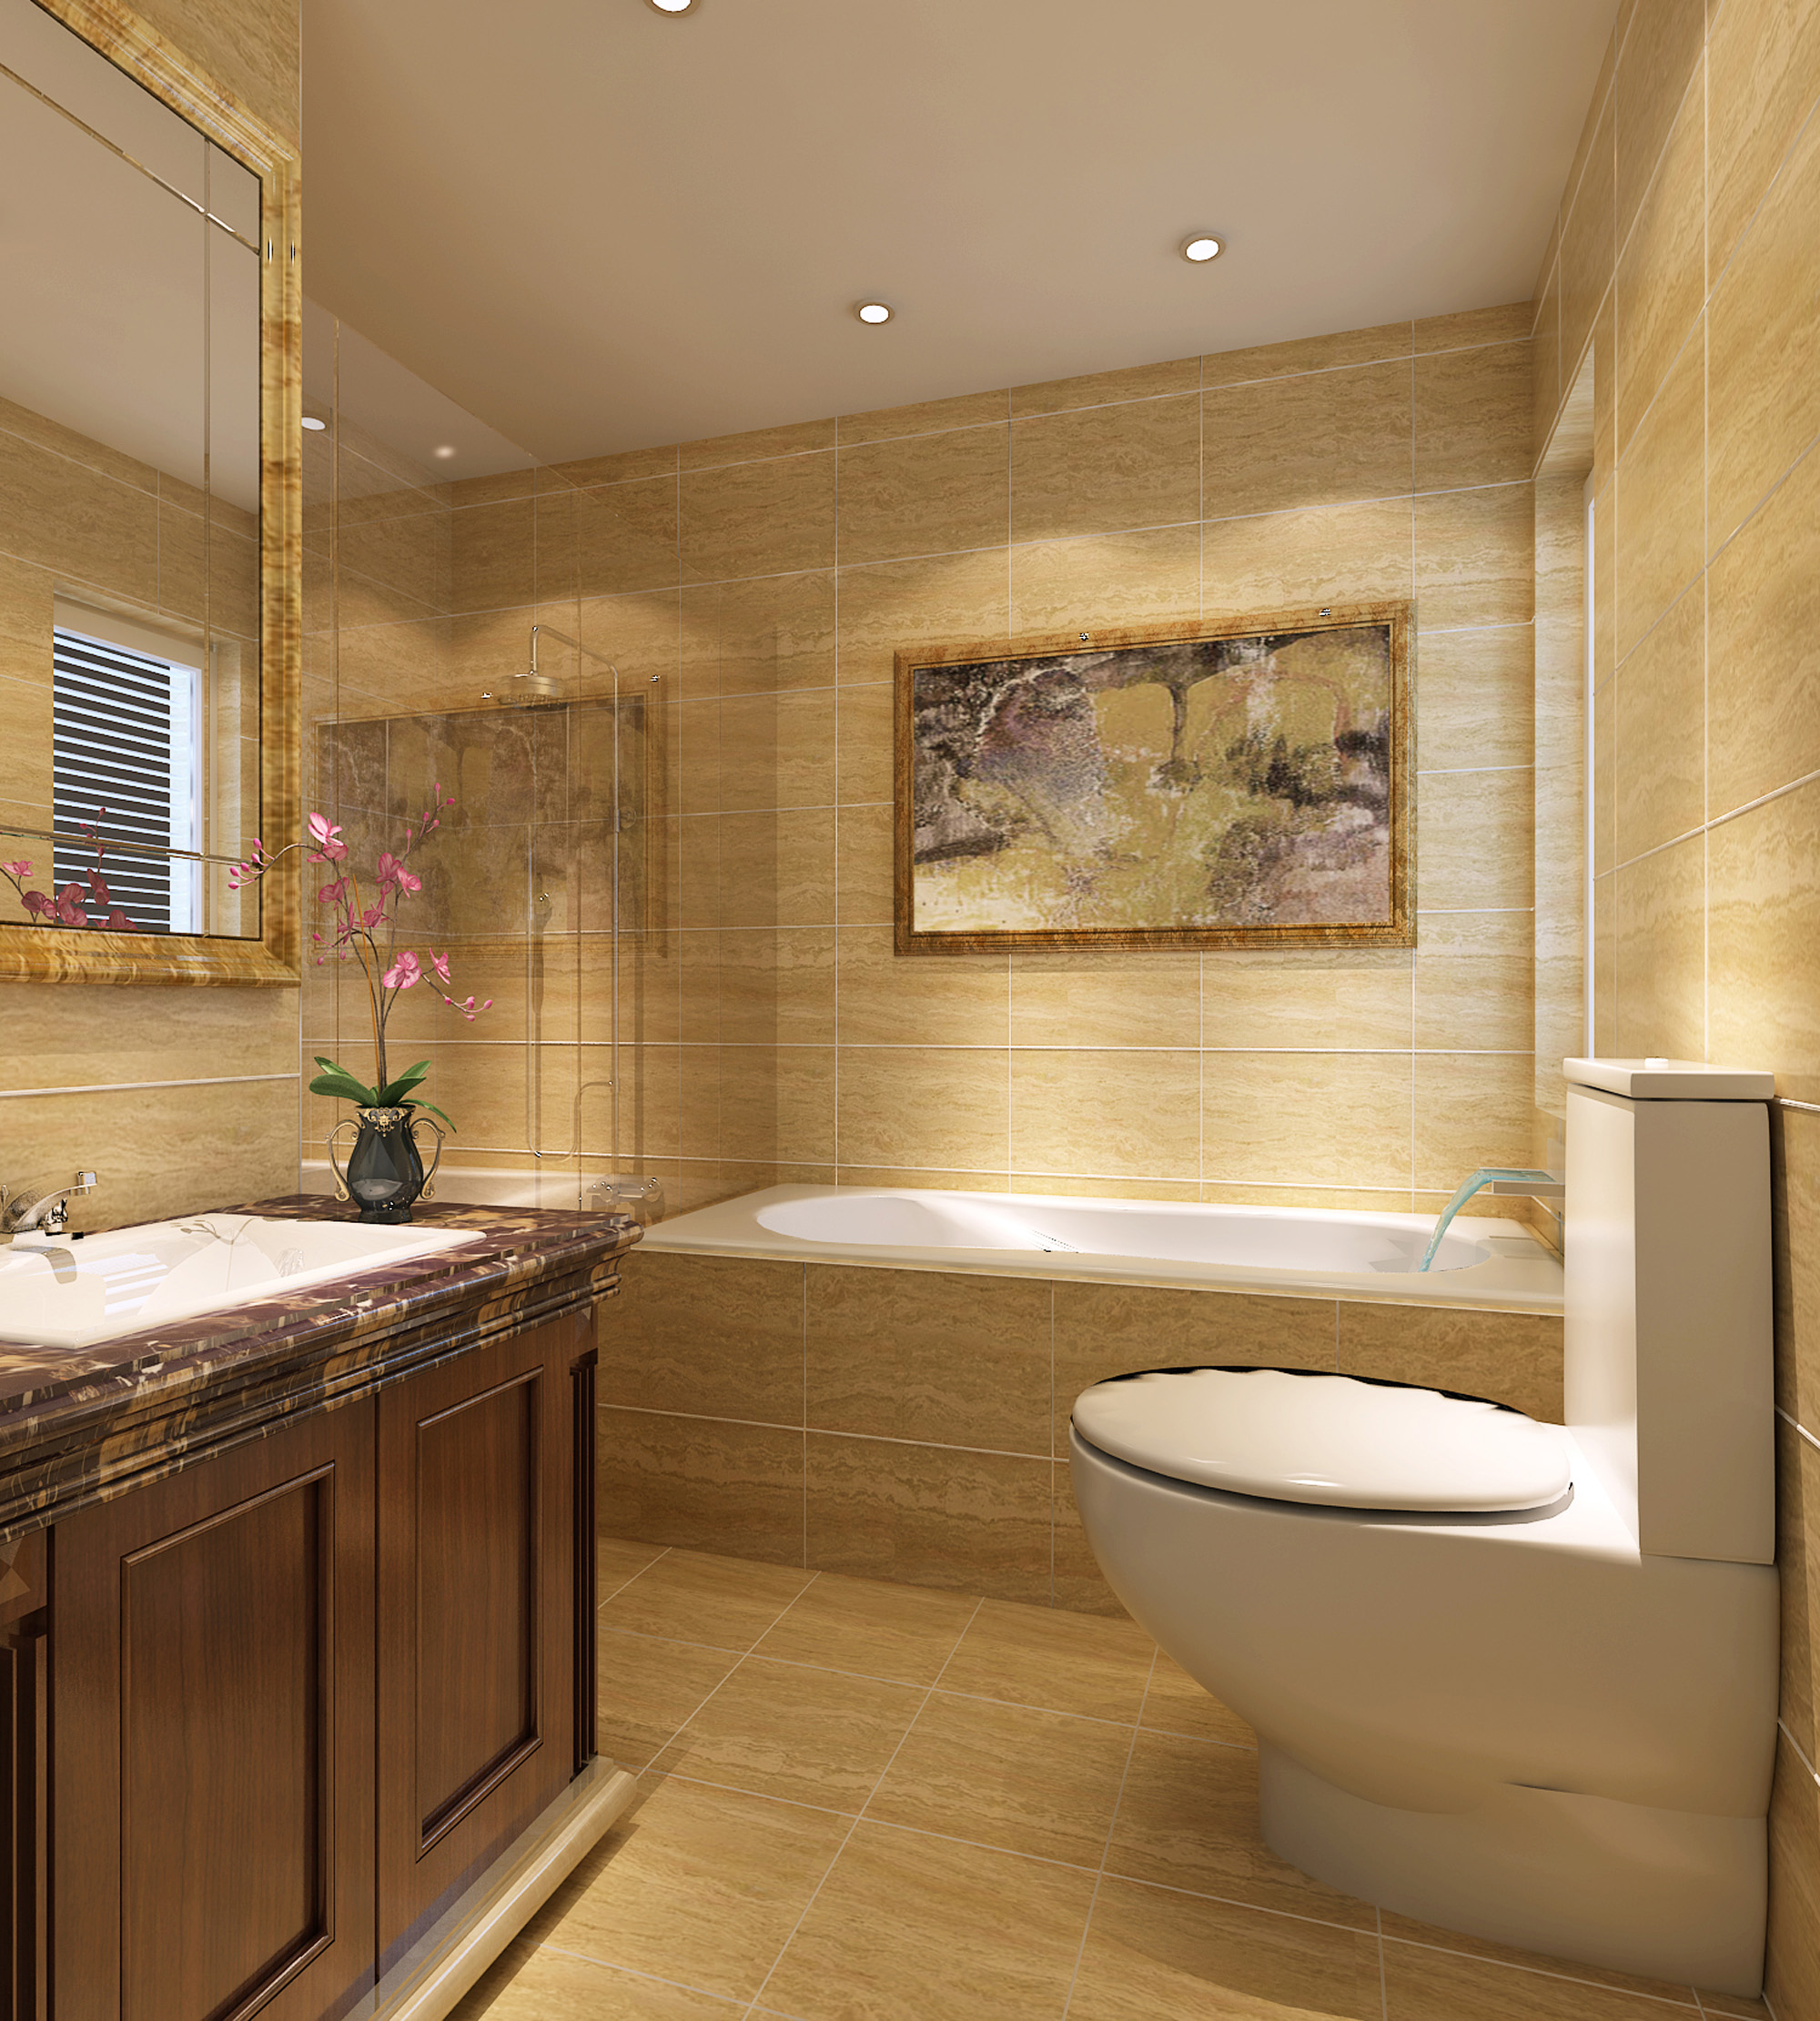 162平欧式风格别墅浴室装修效果图_太平洋家居网图库